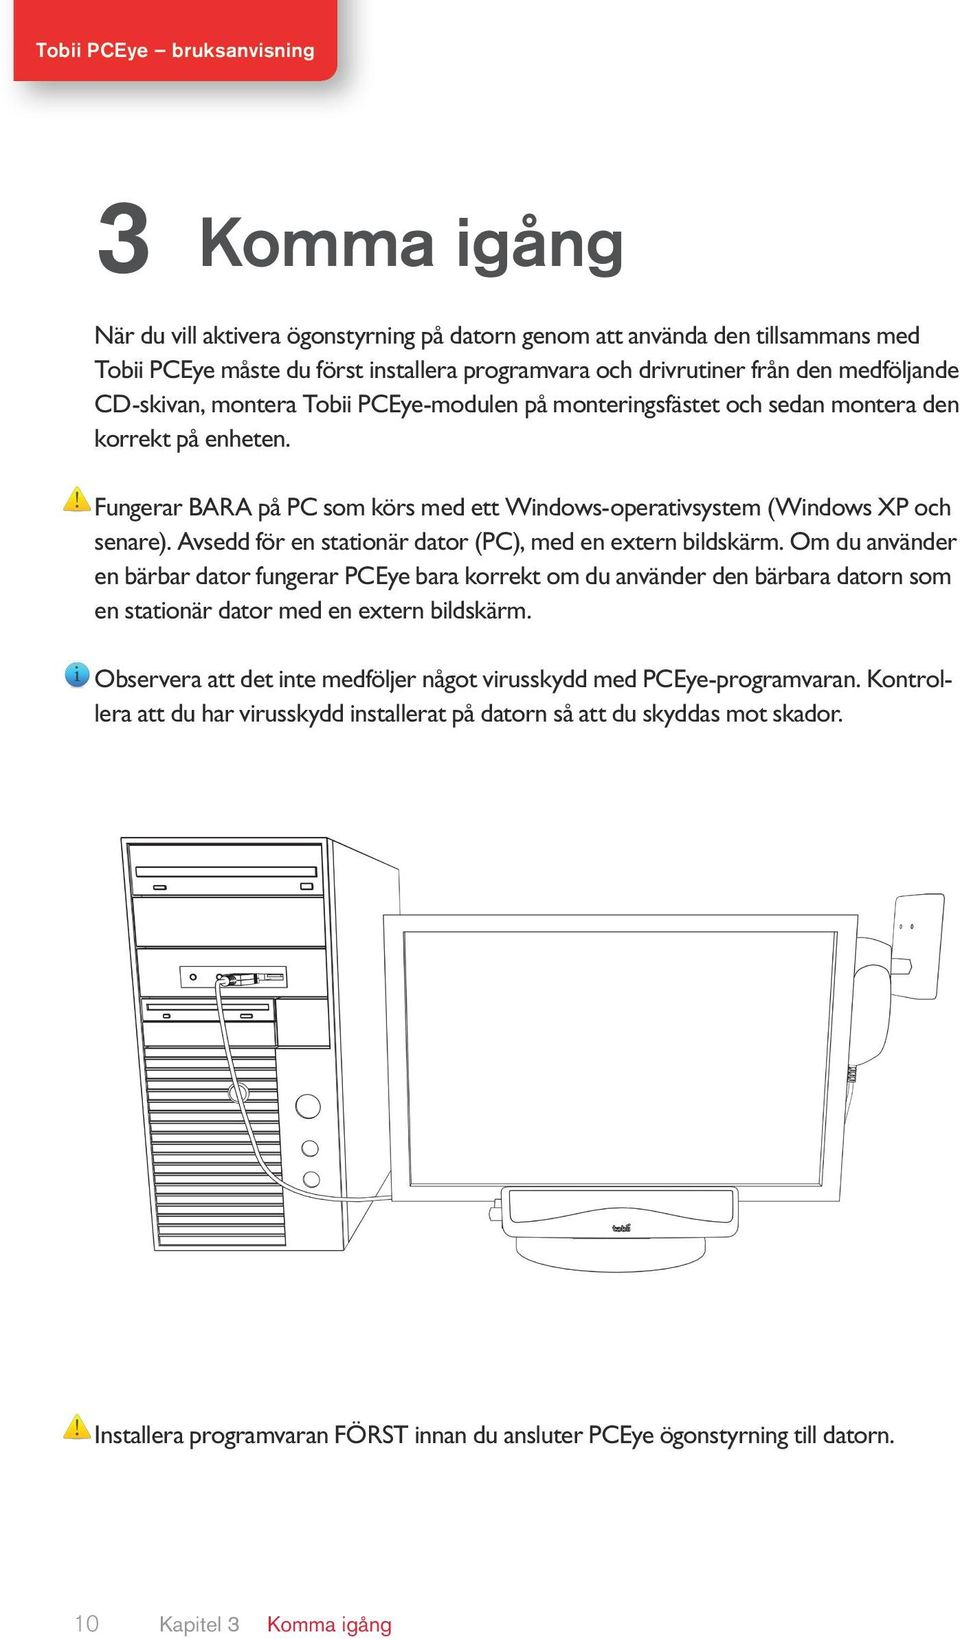 Avsedd för en stationär dator (PC), med en extern bildskärm.